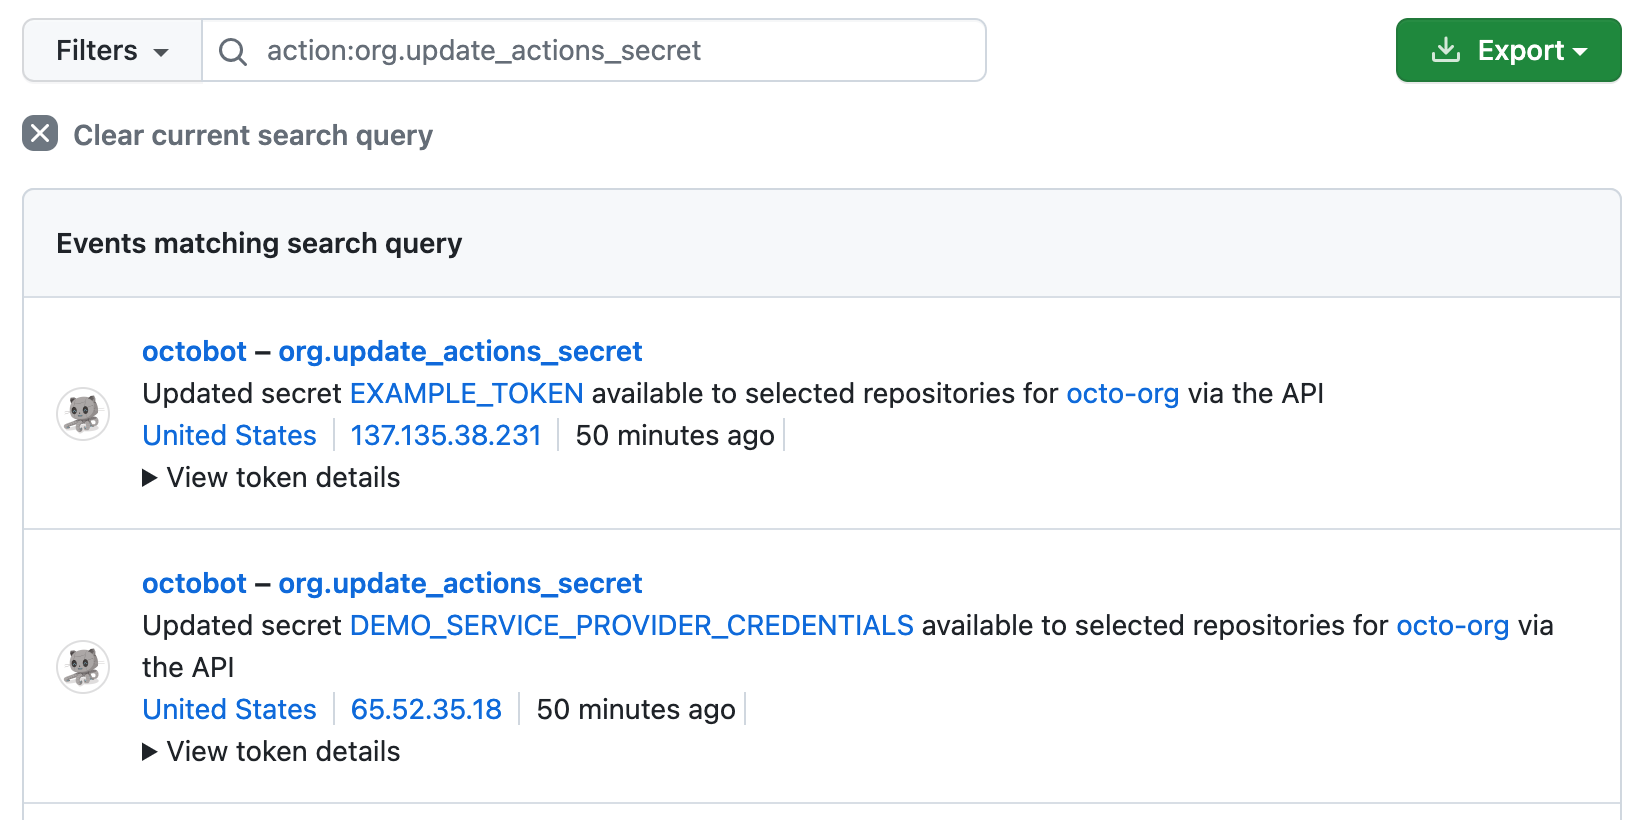 Captura de pantalla que muestra una búsqueda de "action:org.update_actions_secret" en el registro de auditoría de una organización. Dos resultados detallan las actualizaciones de la API a dos secretos que están disponibles para los repositorios seleccionados.